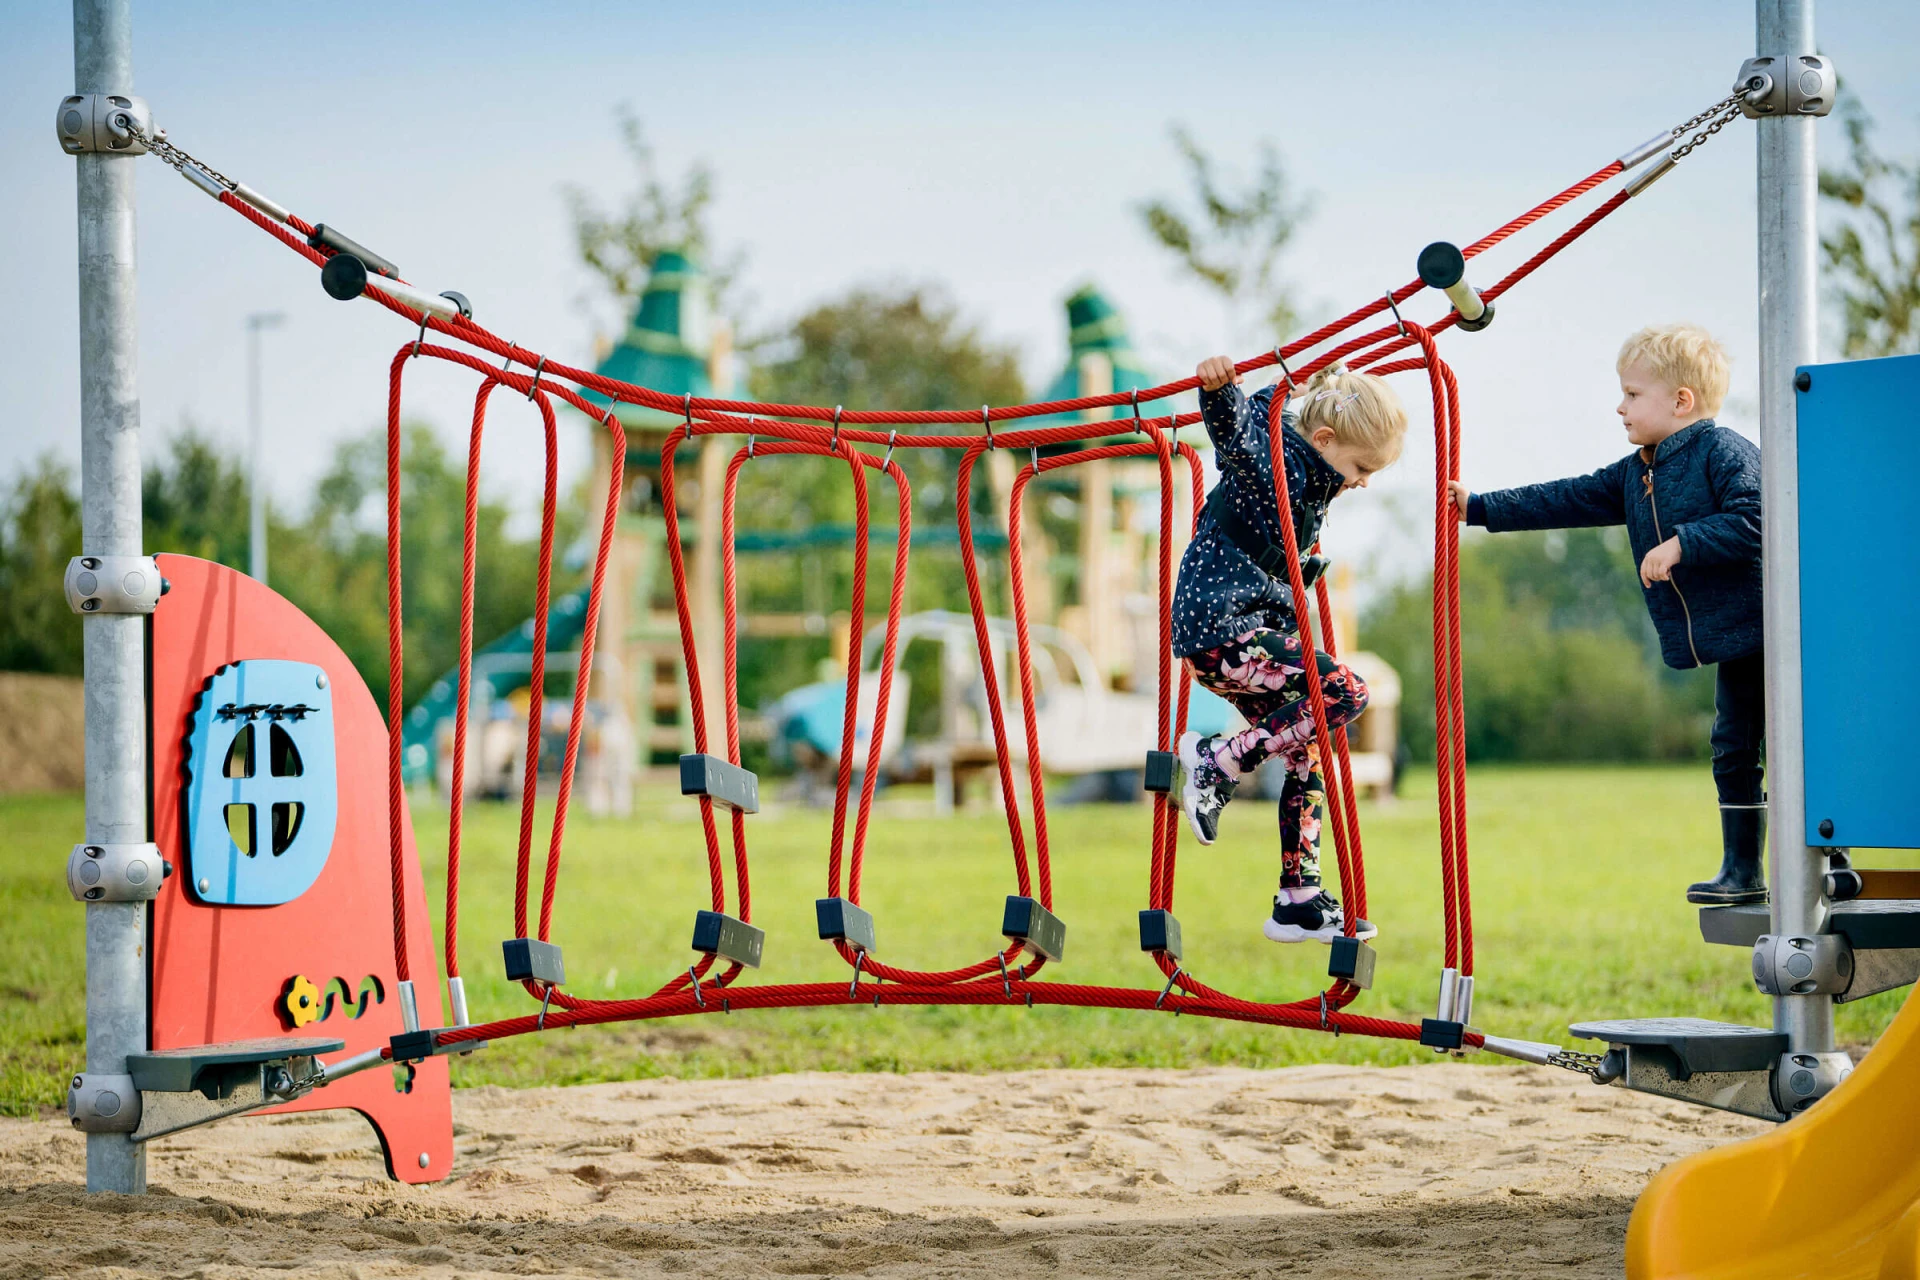 Vorschulkinder spielen auf einem Mini-Spielplatz mit Kletterparcours